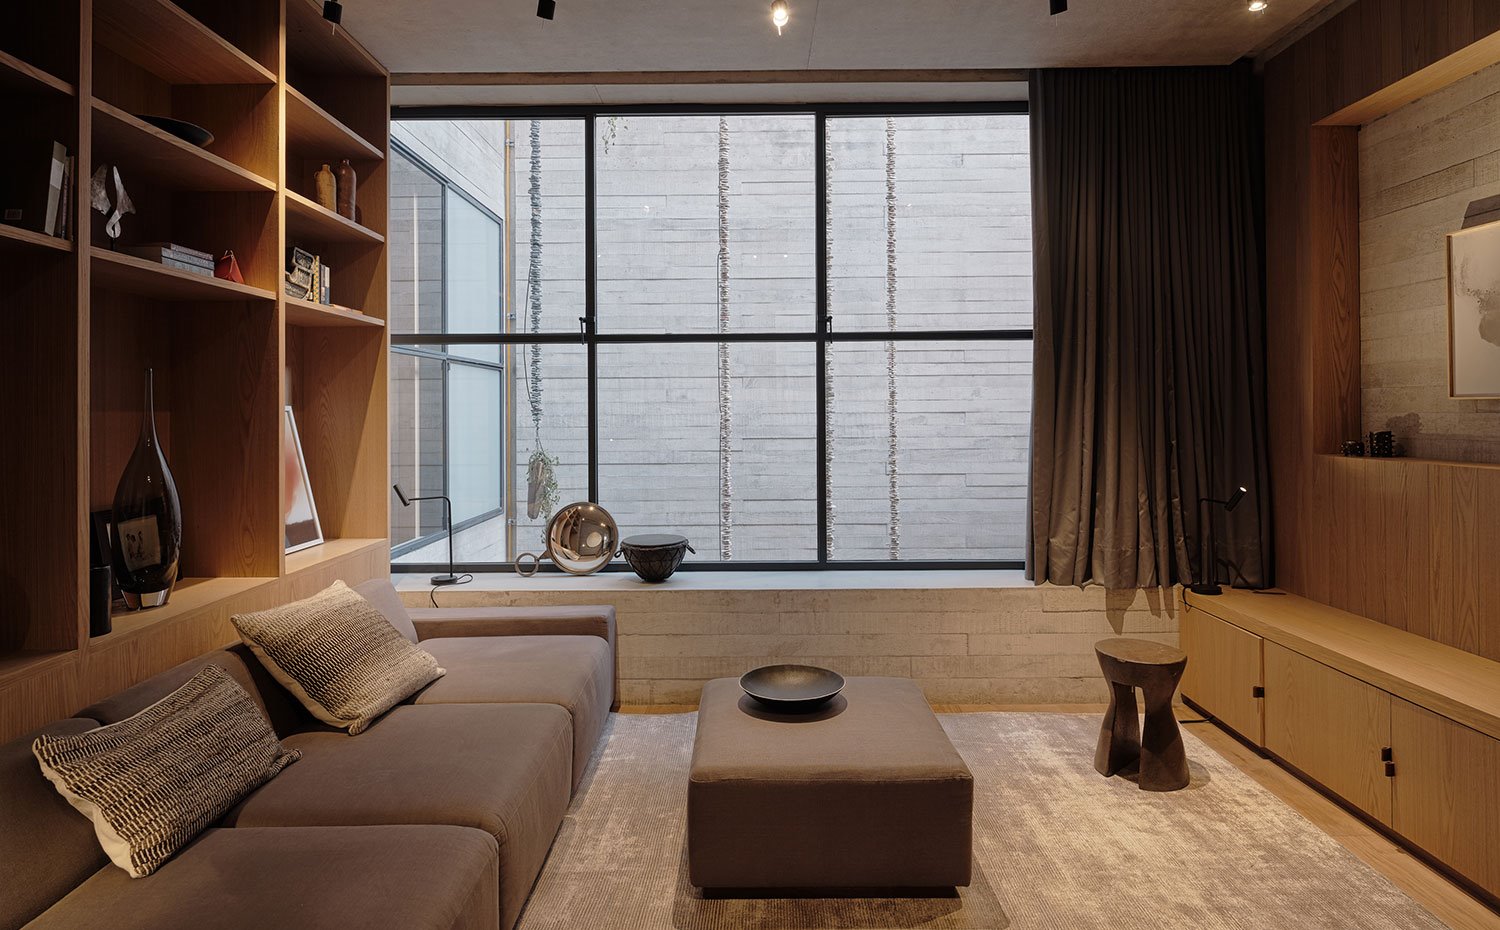 Zona de estar con sofá y pouf central en marrón, mobiliario en madera clara, alfombra en tonos tierra, taburete de madera